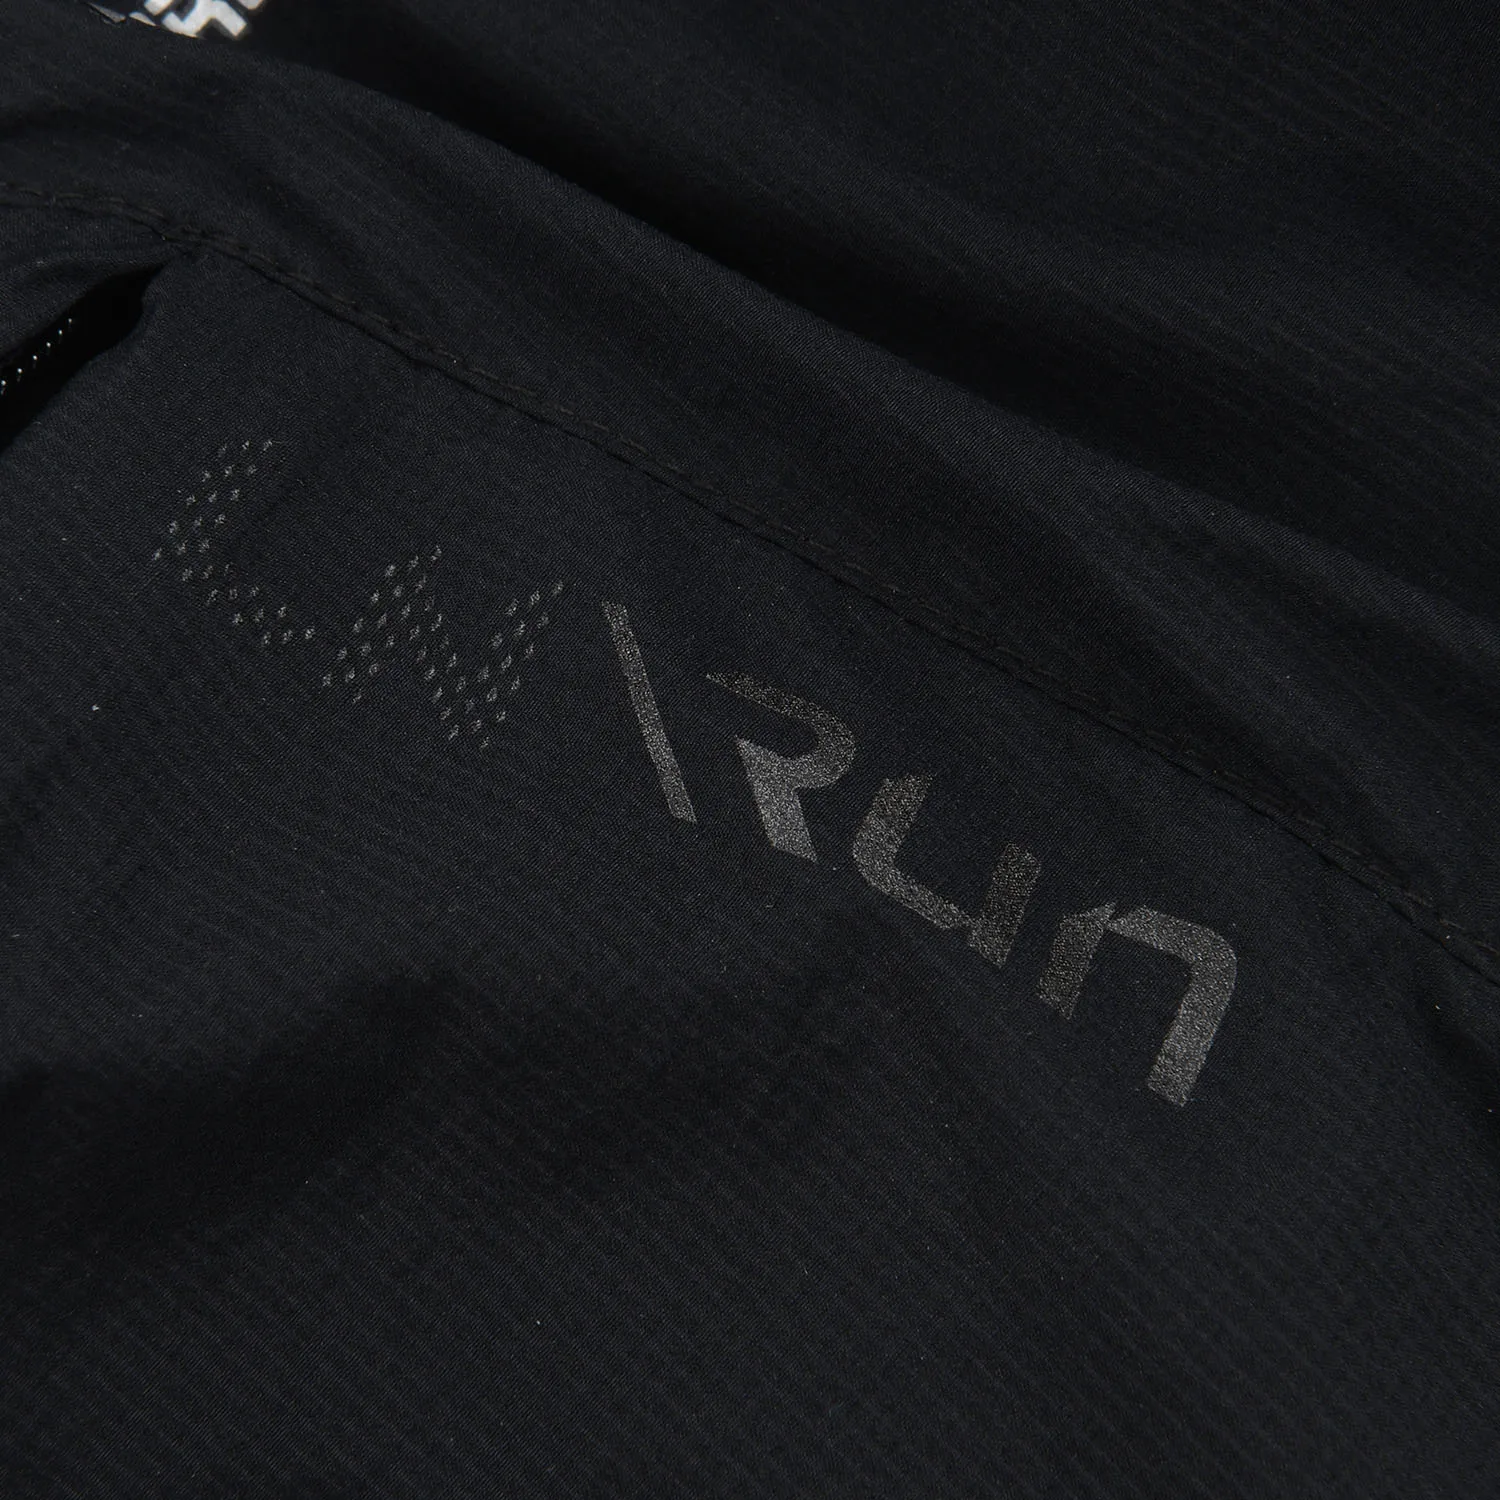 Li-Ning мужские спортивные шорты для бега водонепроницаемые дышащие с подкладкой